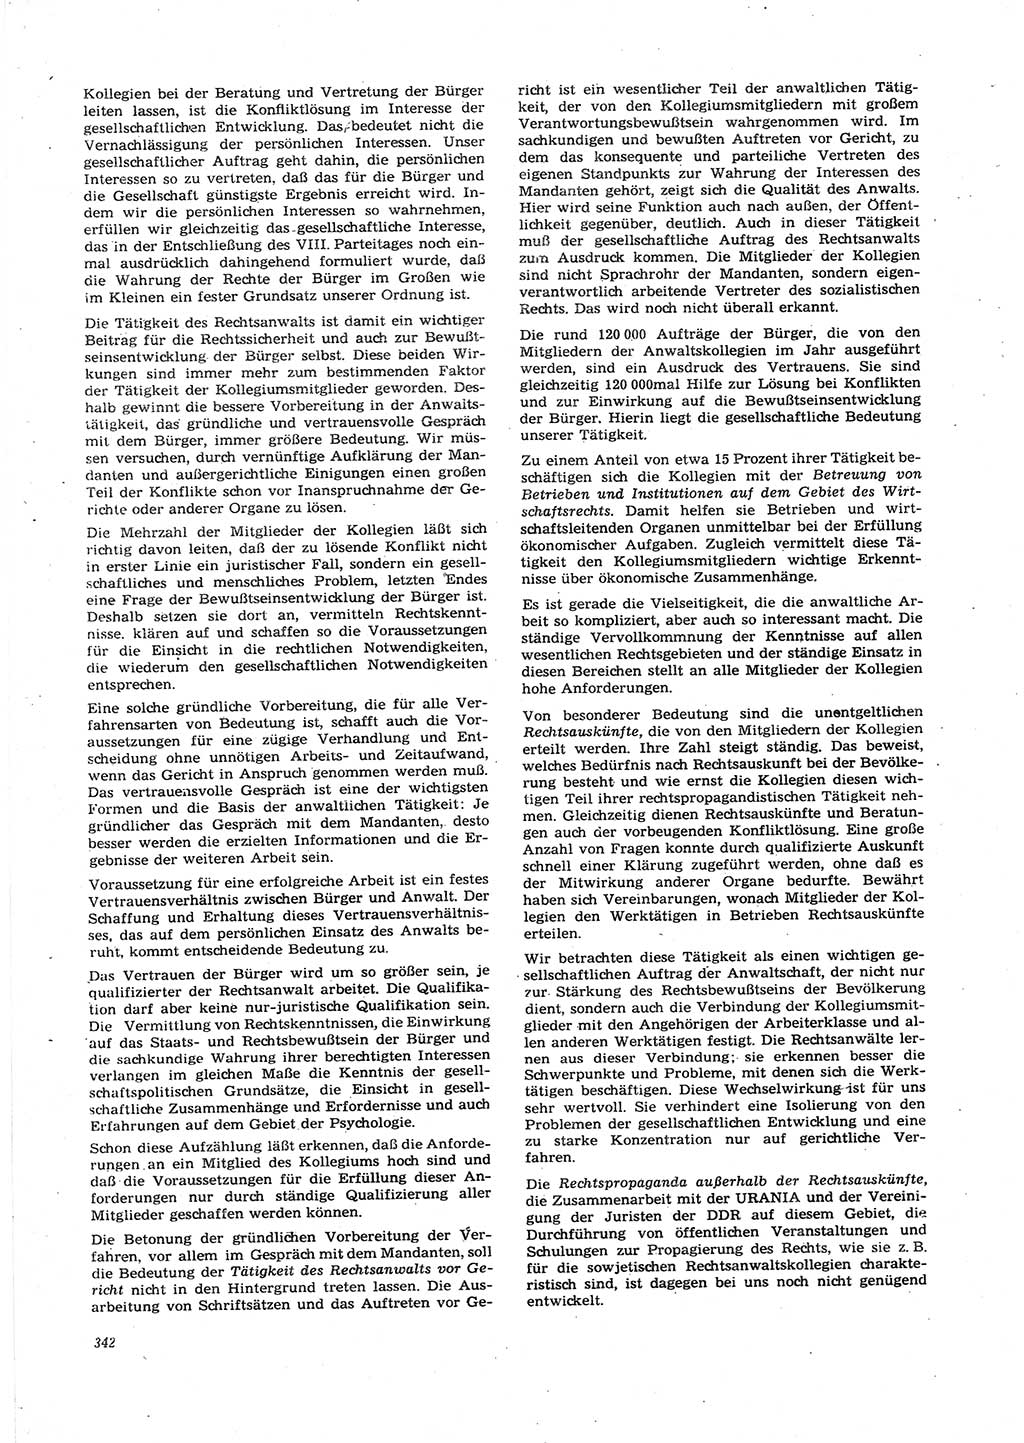 Neue Justiz (NJ), Zeitschrift für Recht und Rechtswissenschaft [Deutsche Demokratische Republik (DDR)], 27. Jahrgang 1973, Seite 342 (NJ DDR 1973, S. 342)